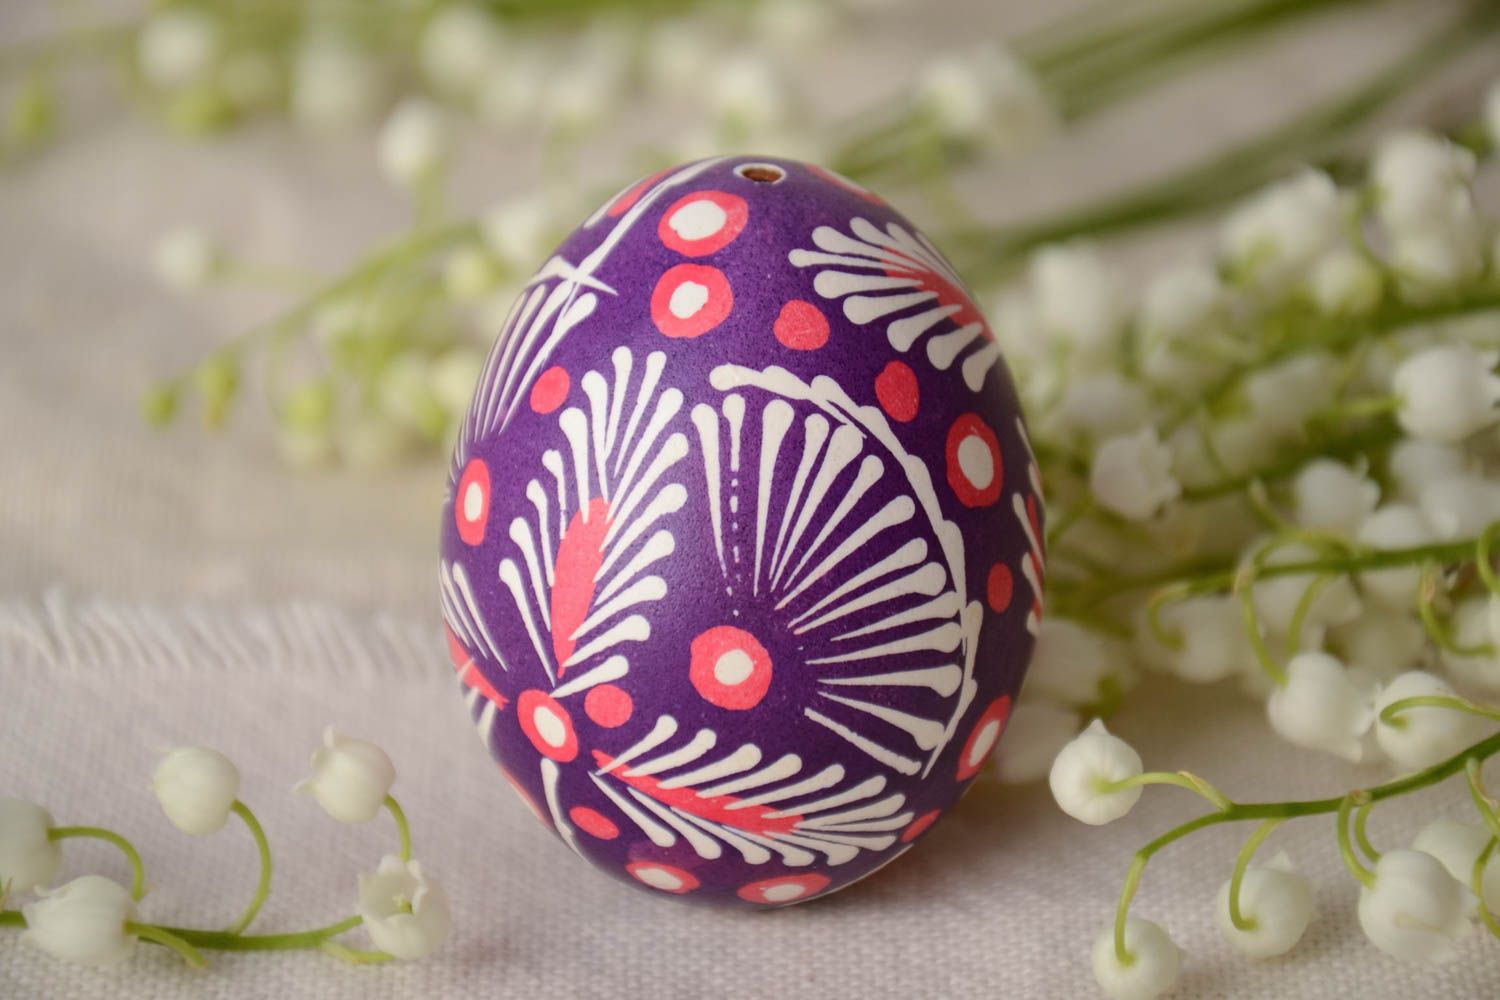 Расписное яйцо в лемковской технике фиолетовое с белыми узорами ручной работы фото 1